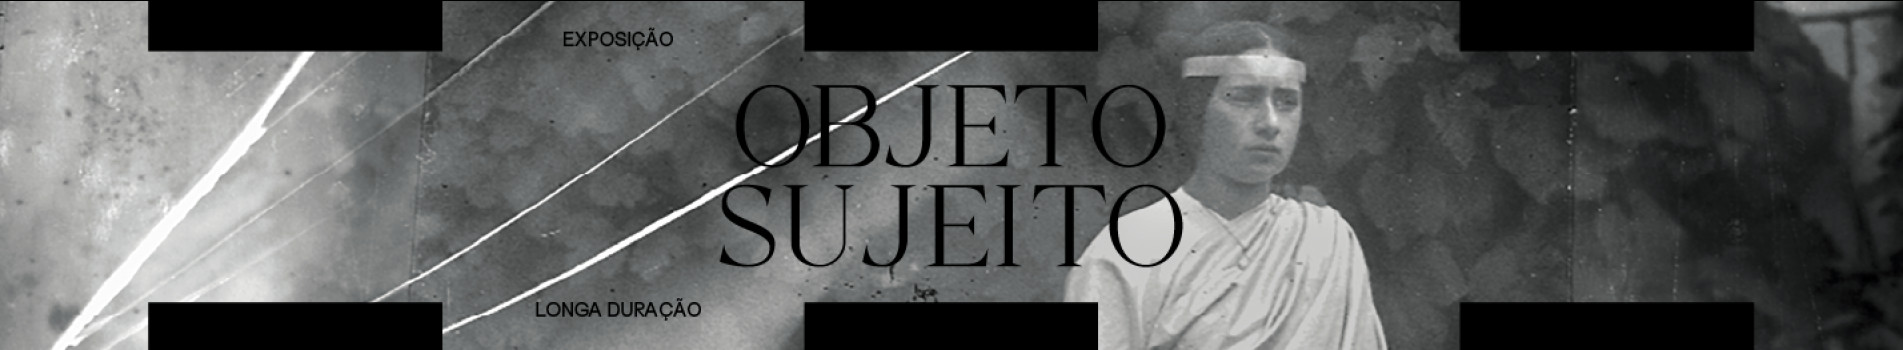 Banner da exposição Objeto Sujeito